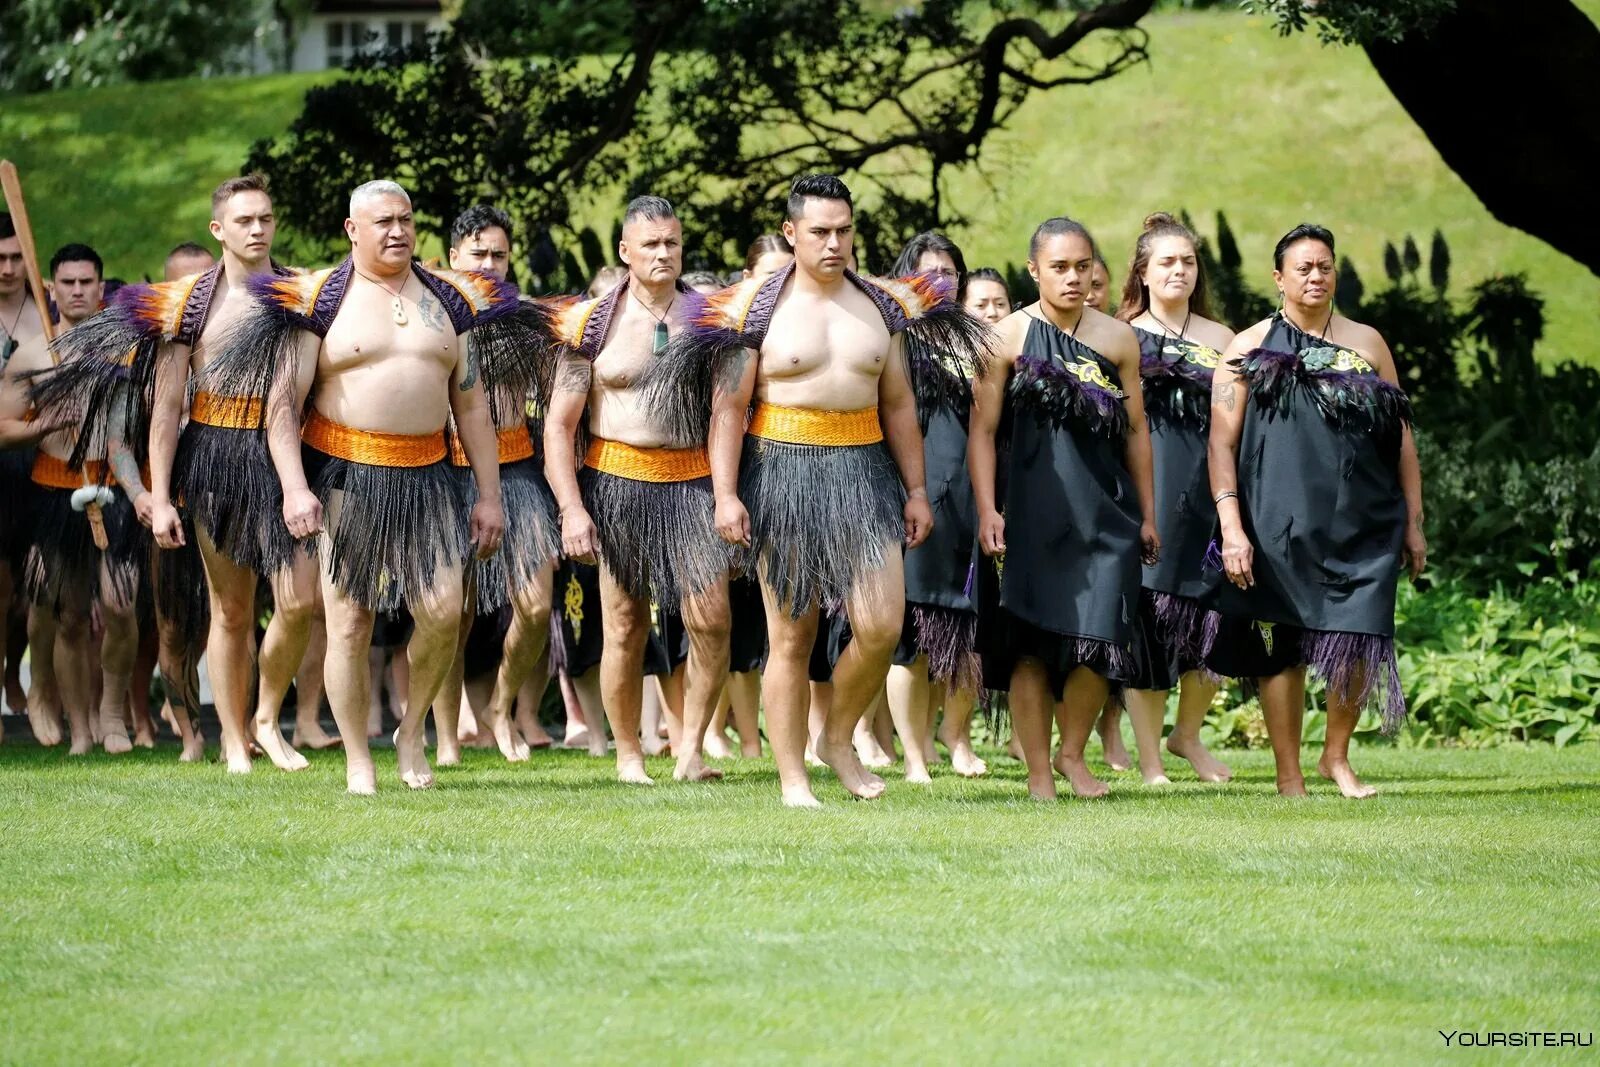 Кличка новозеландца 4. Новая Зеландия новозеландцы. Вайтанги новая Зеландия. Национальная одежда новой Зеландии. Новая Зеландия люди внешность.